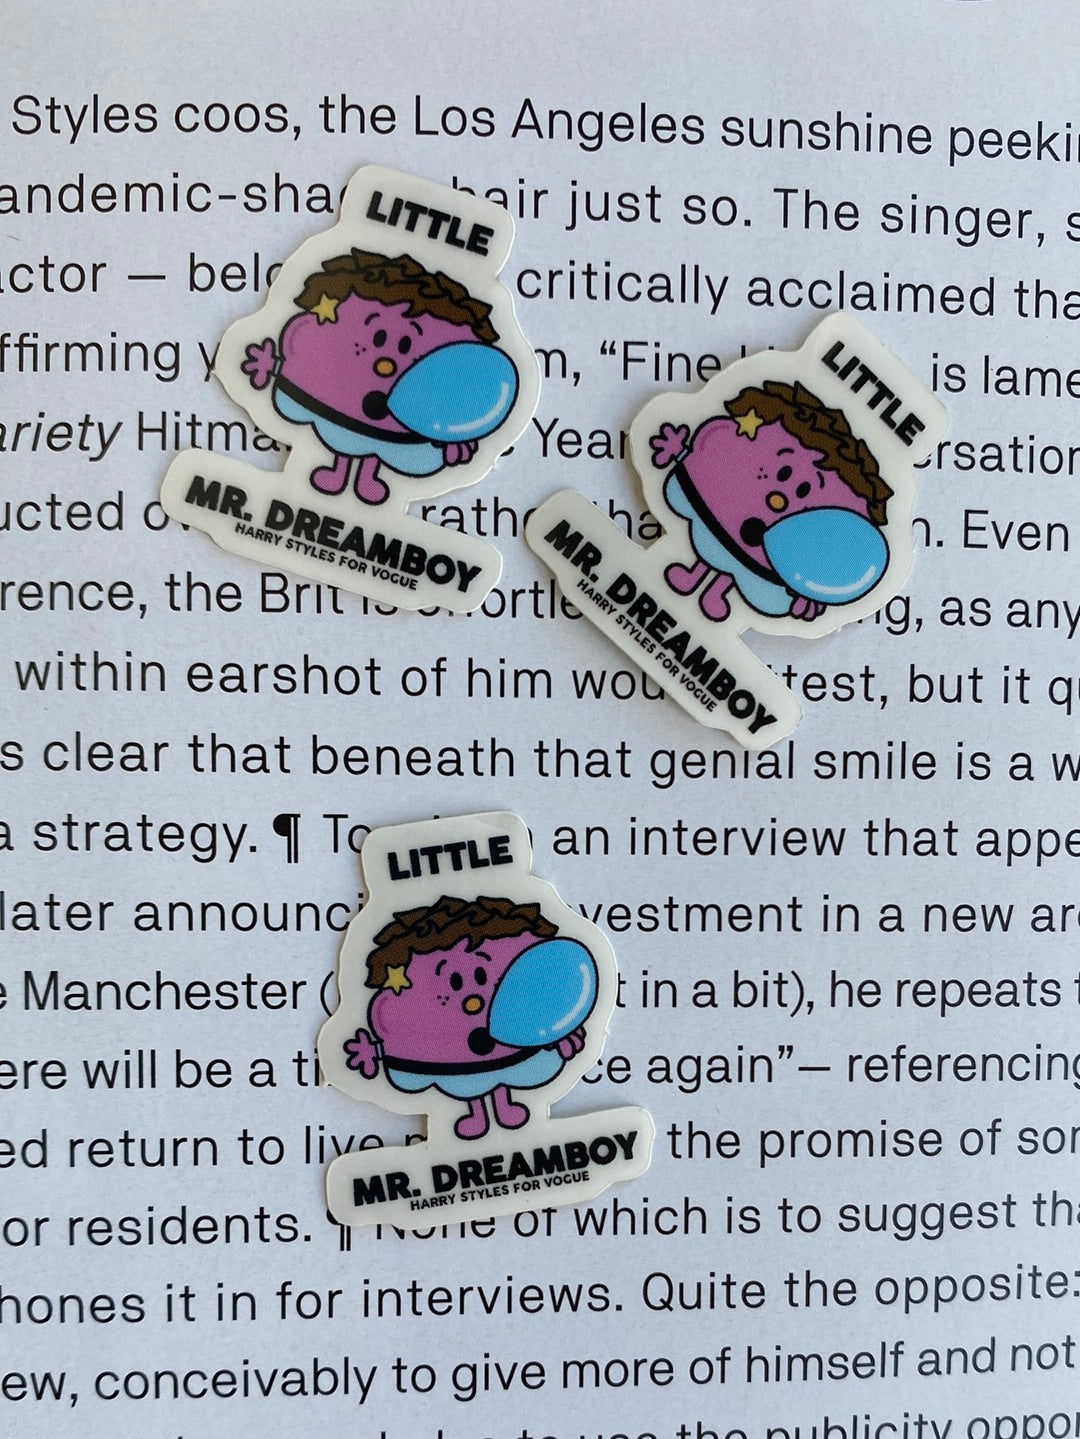 Little Mr. Dreamboy Clear Sticker